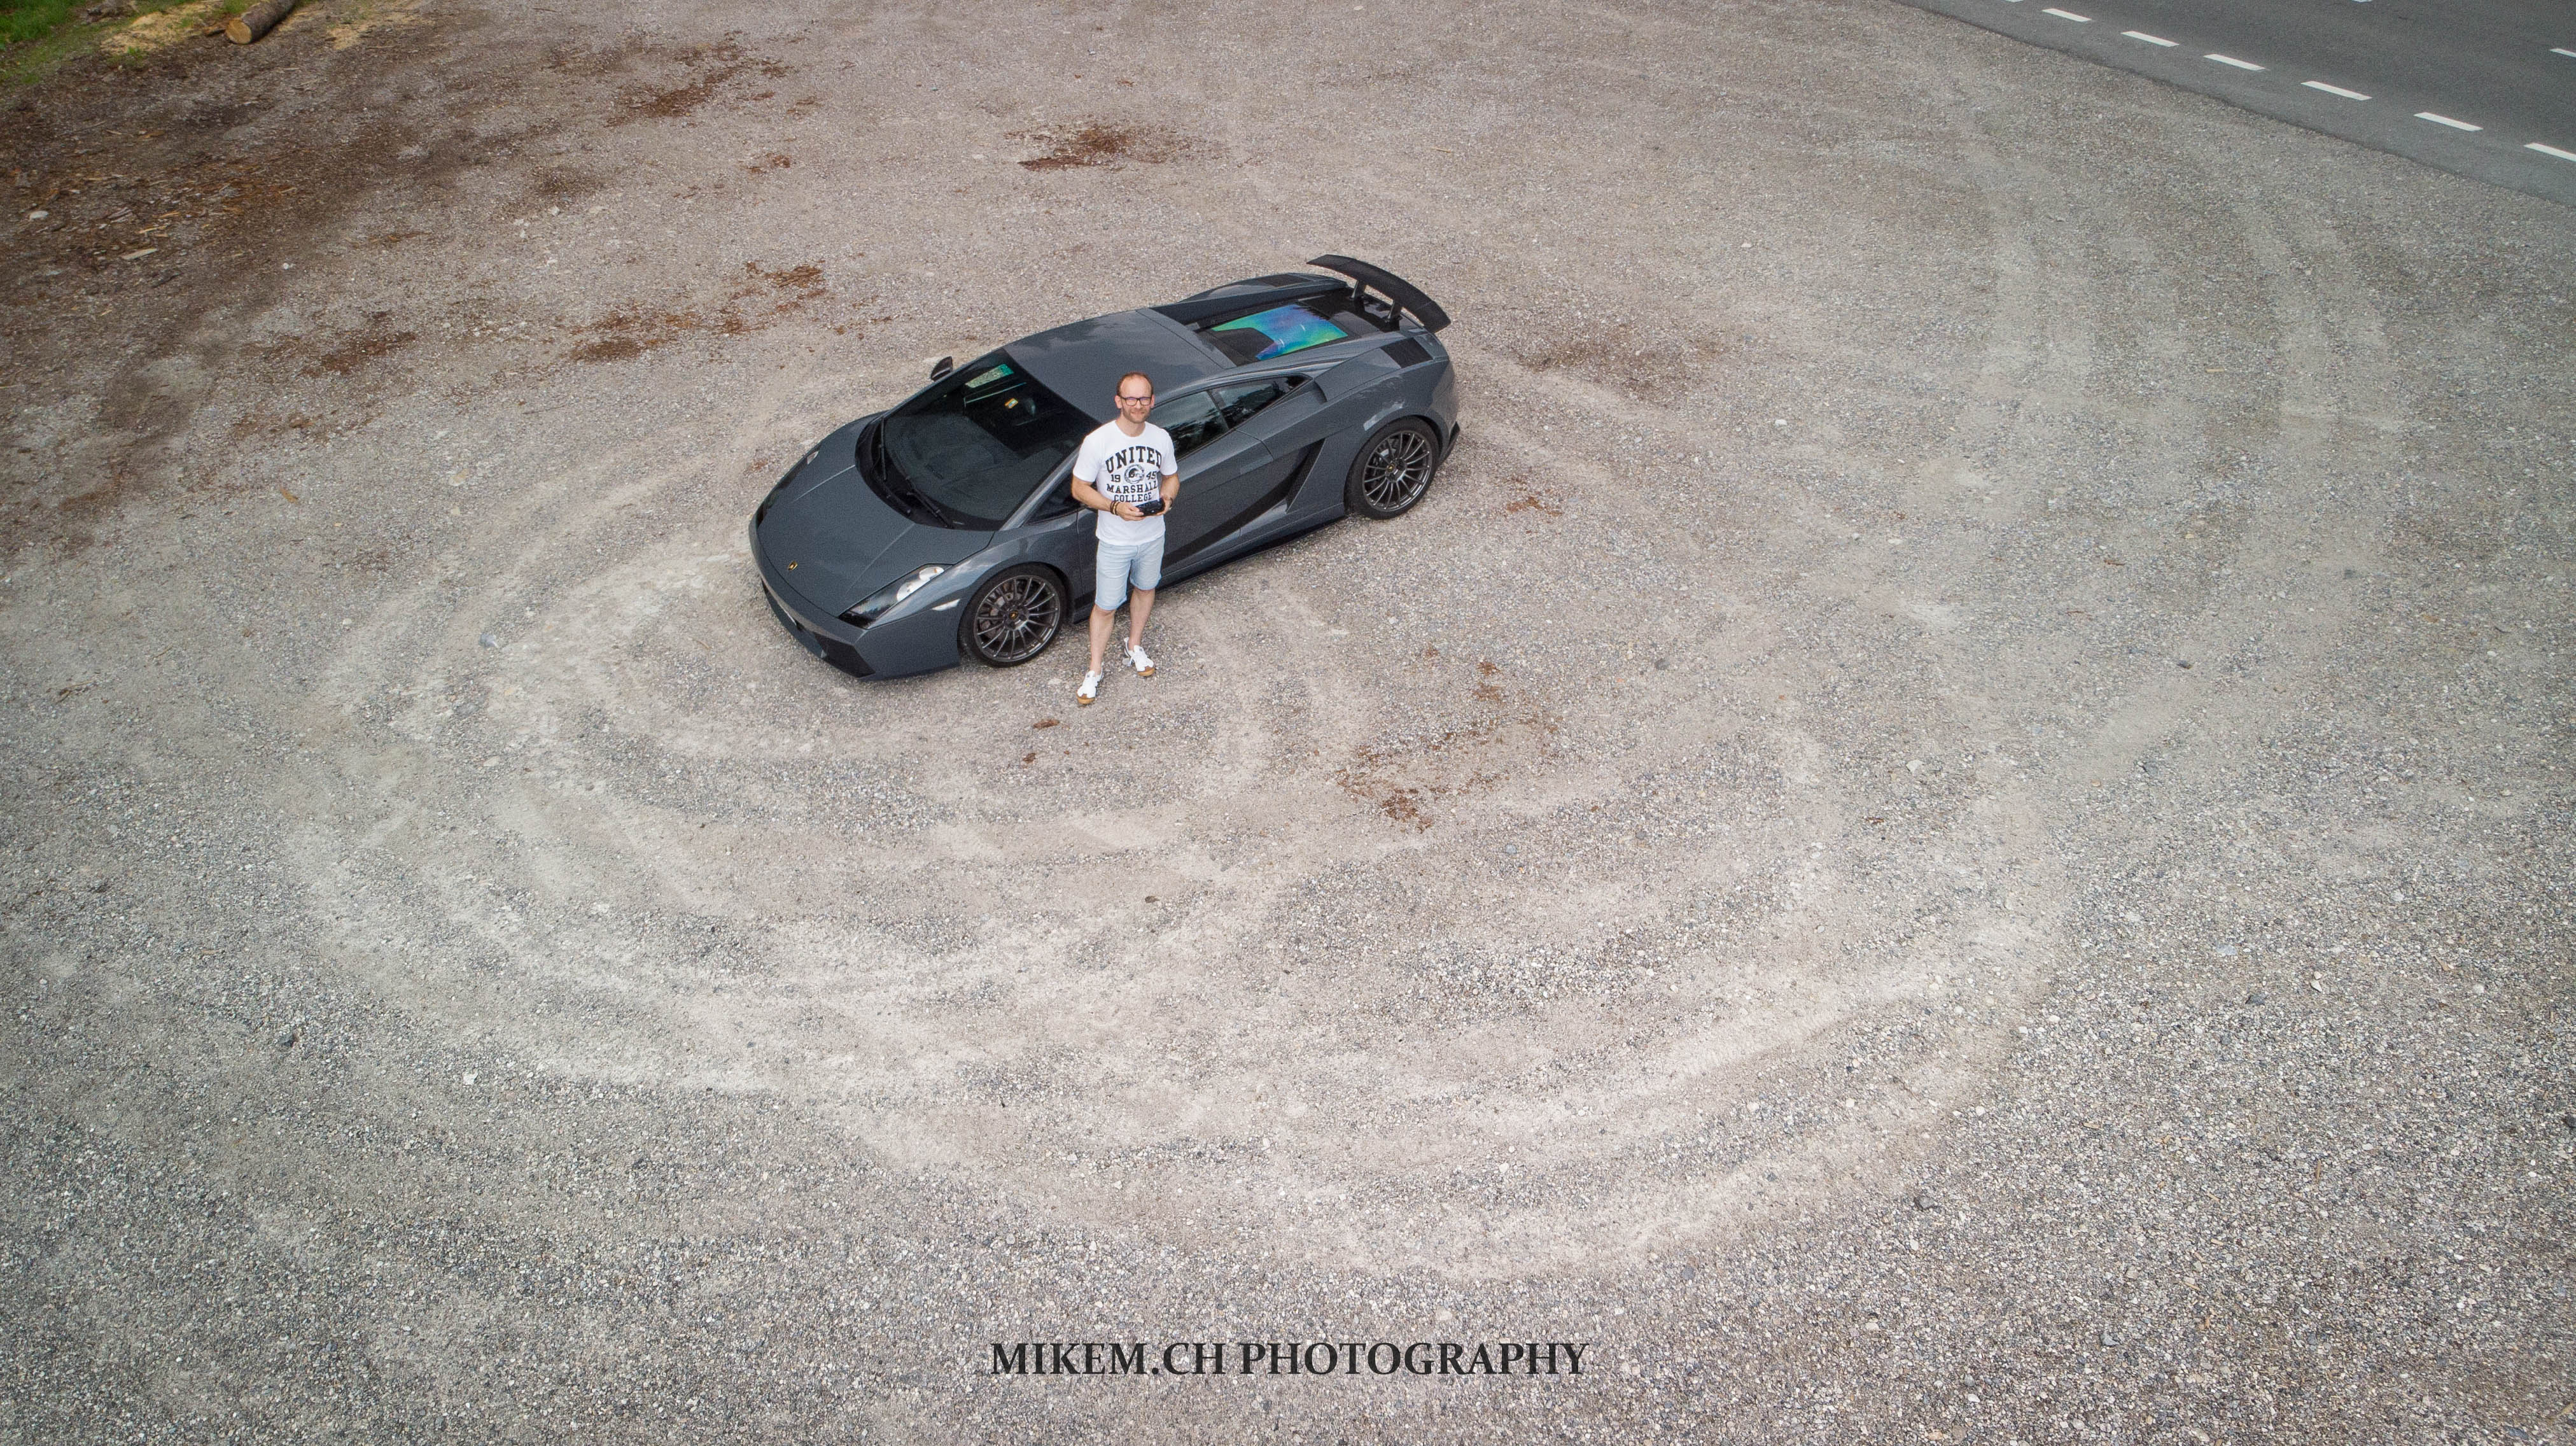 Mikem mit der Drohne und dem Lamborghini unterwegs